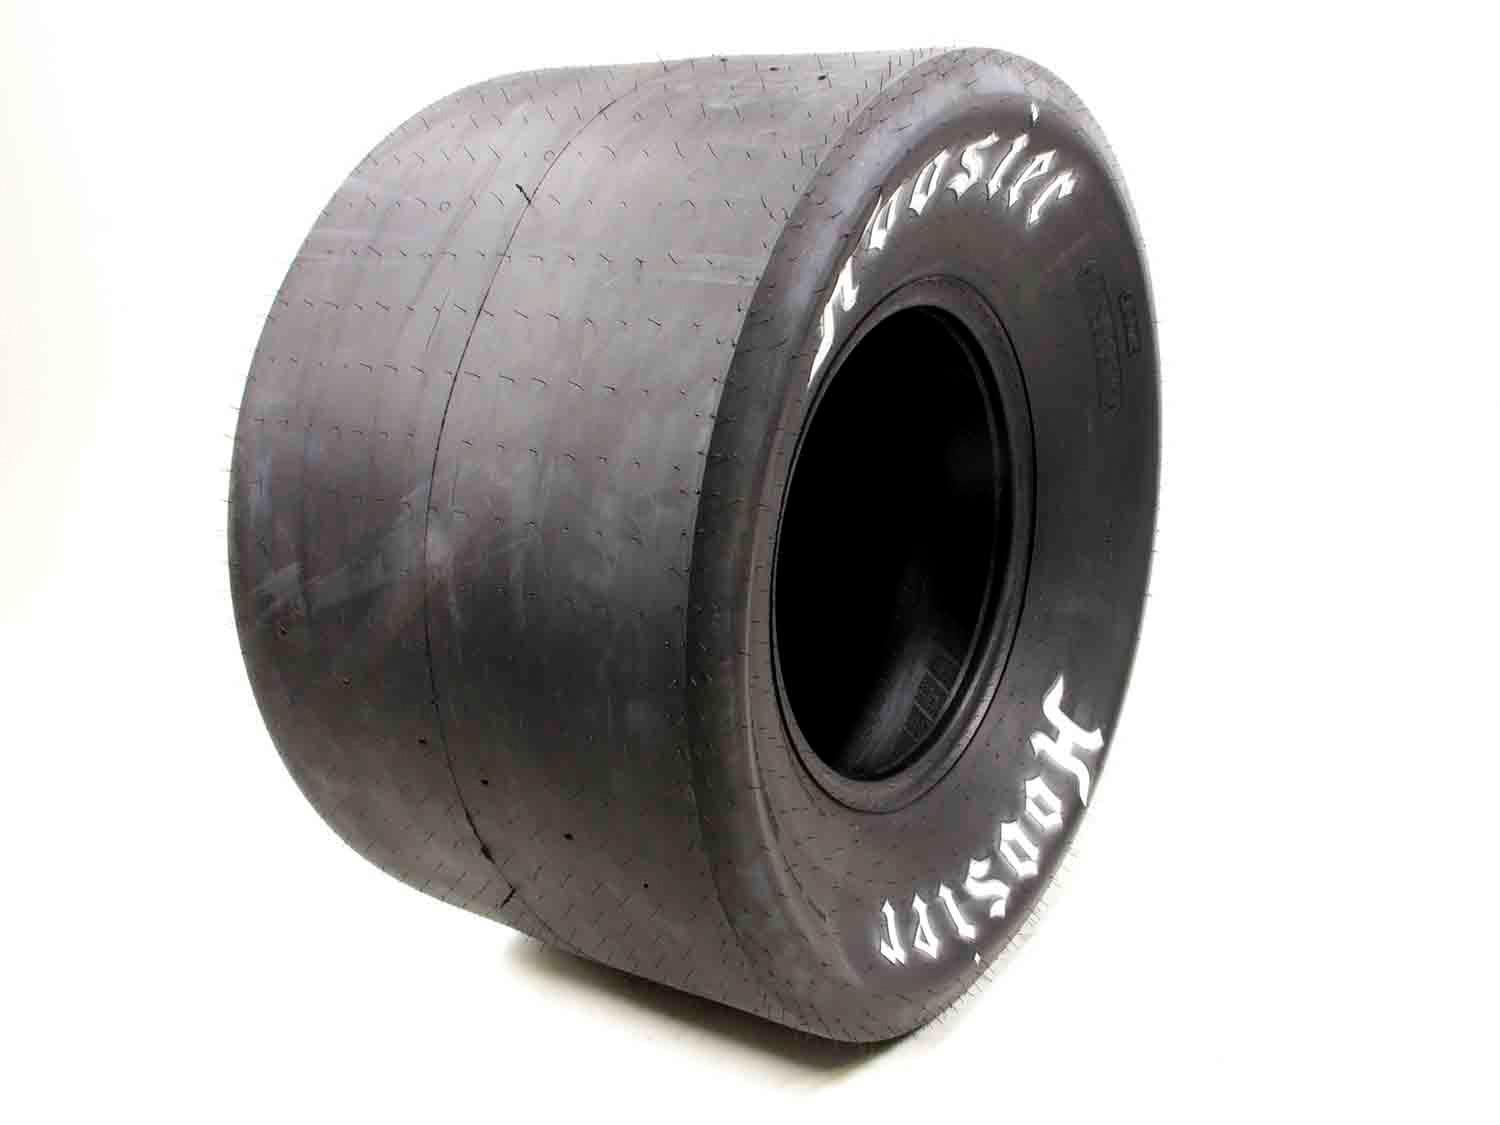 33.0/14.5-15L Drag Tire - L/W - Burlile Performance Products